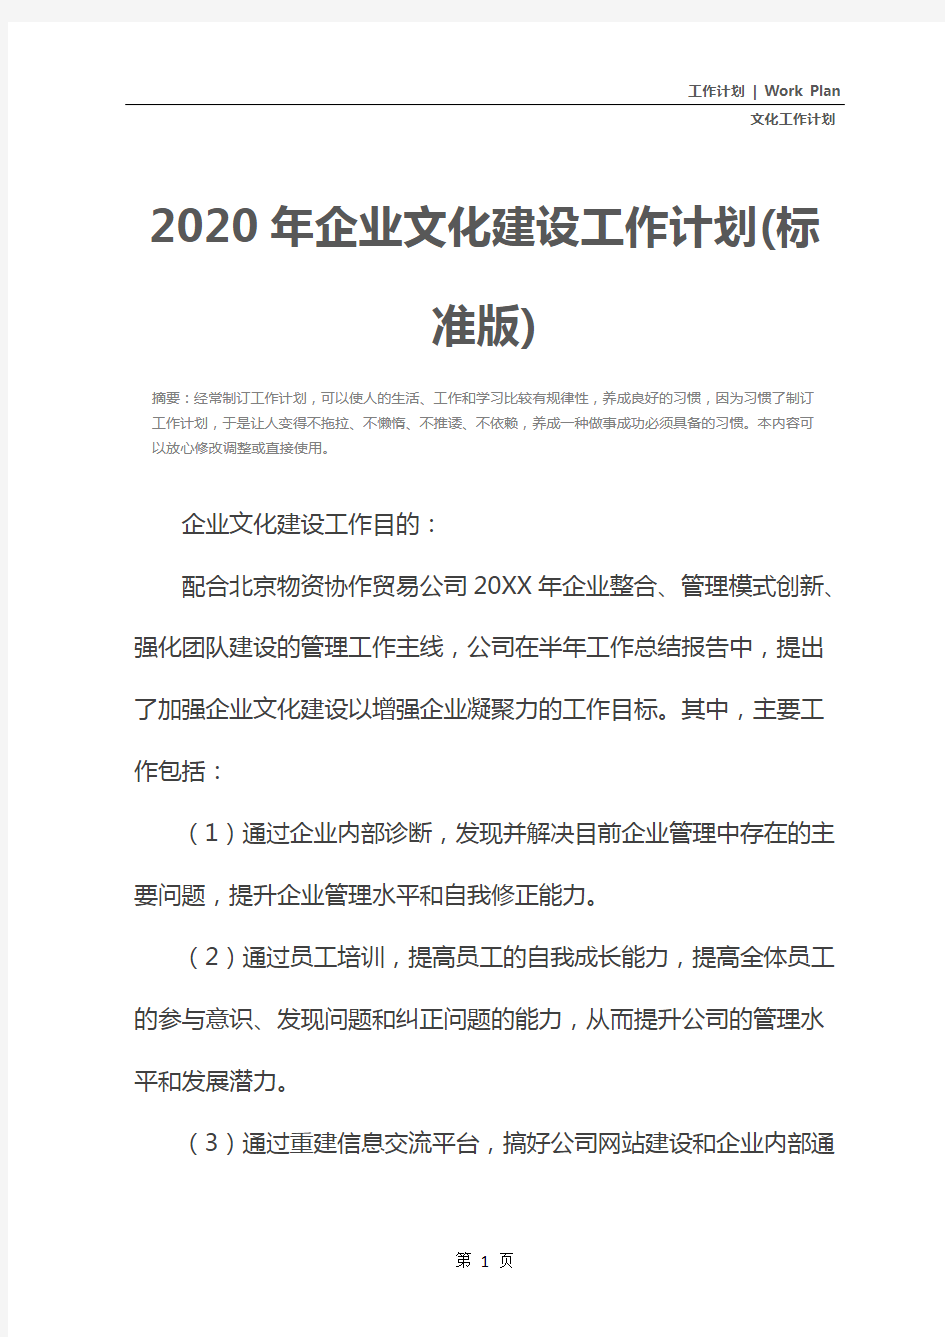 2020年企业文化建设工作计划(标准版)